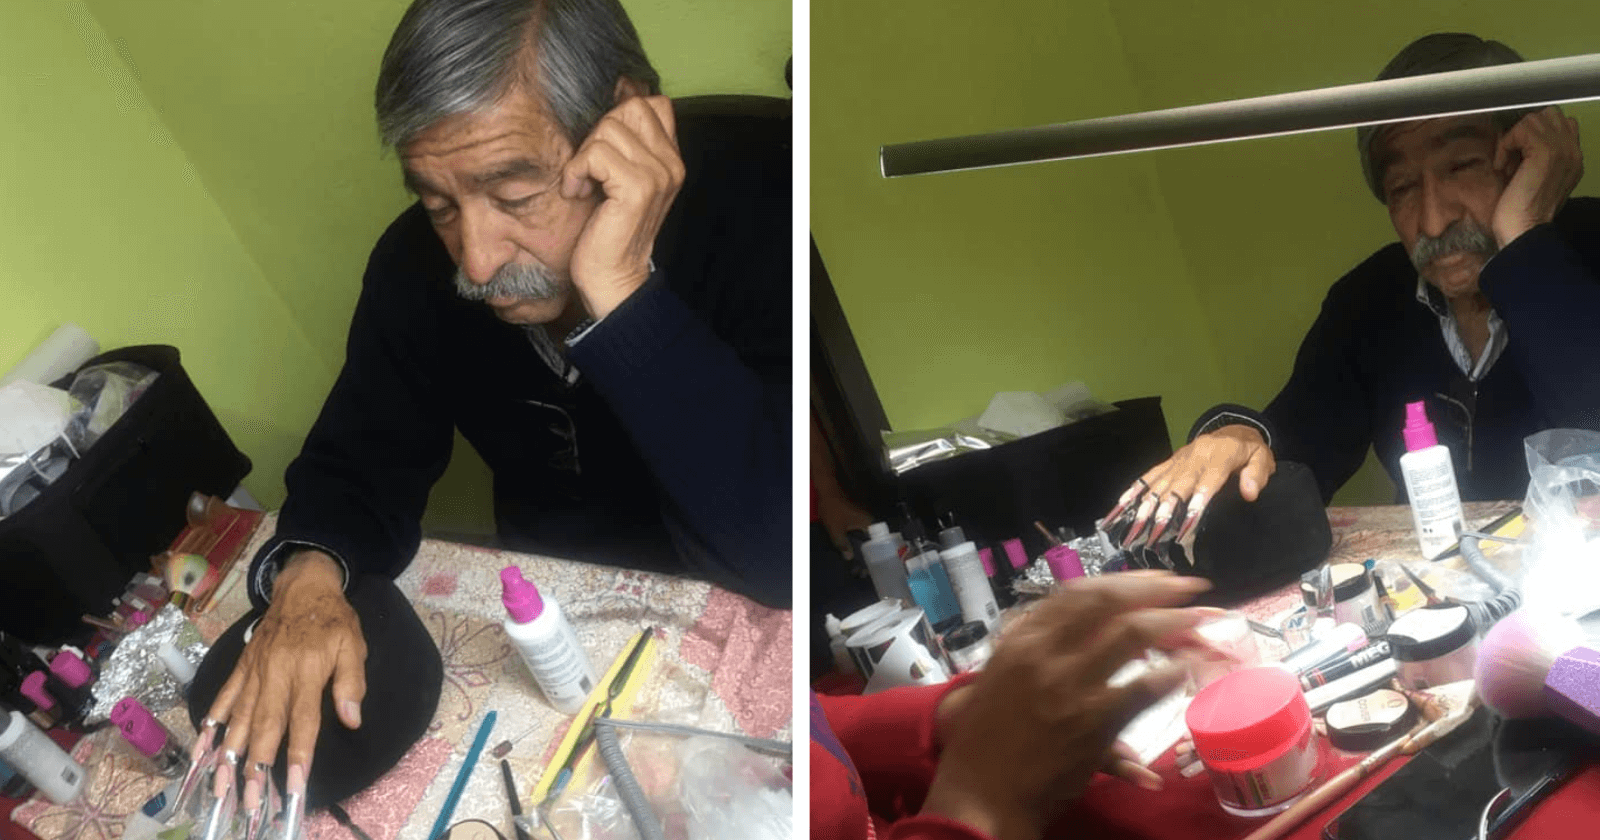 INSPIRADOR: Pai se dispõe a ser modelo para filha que está aprendendo a ser manicure